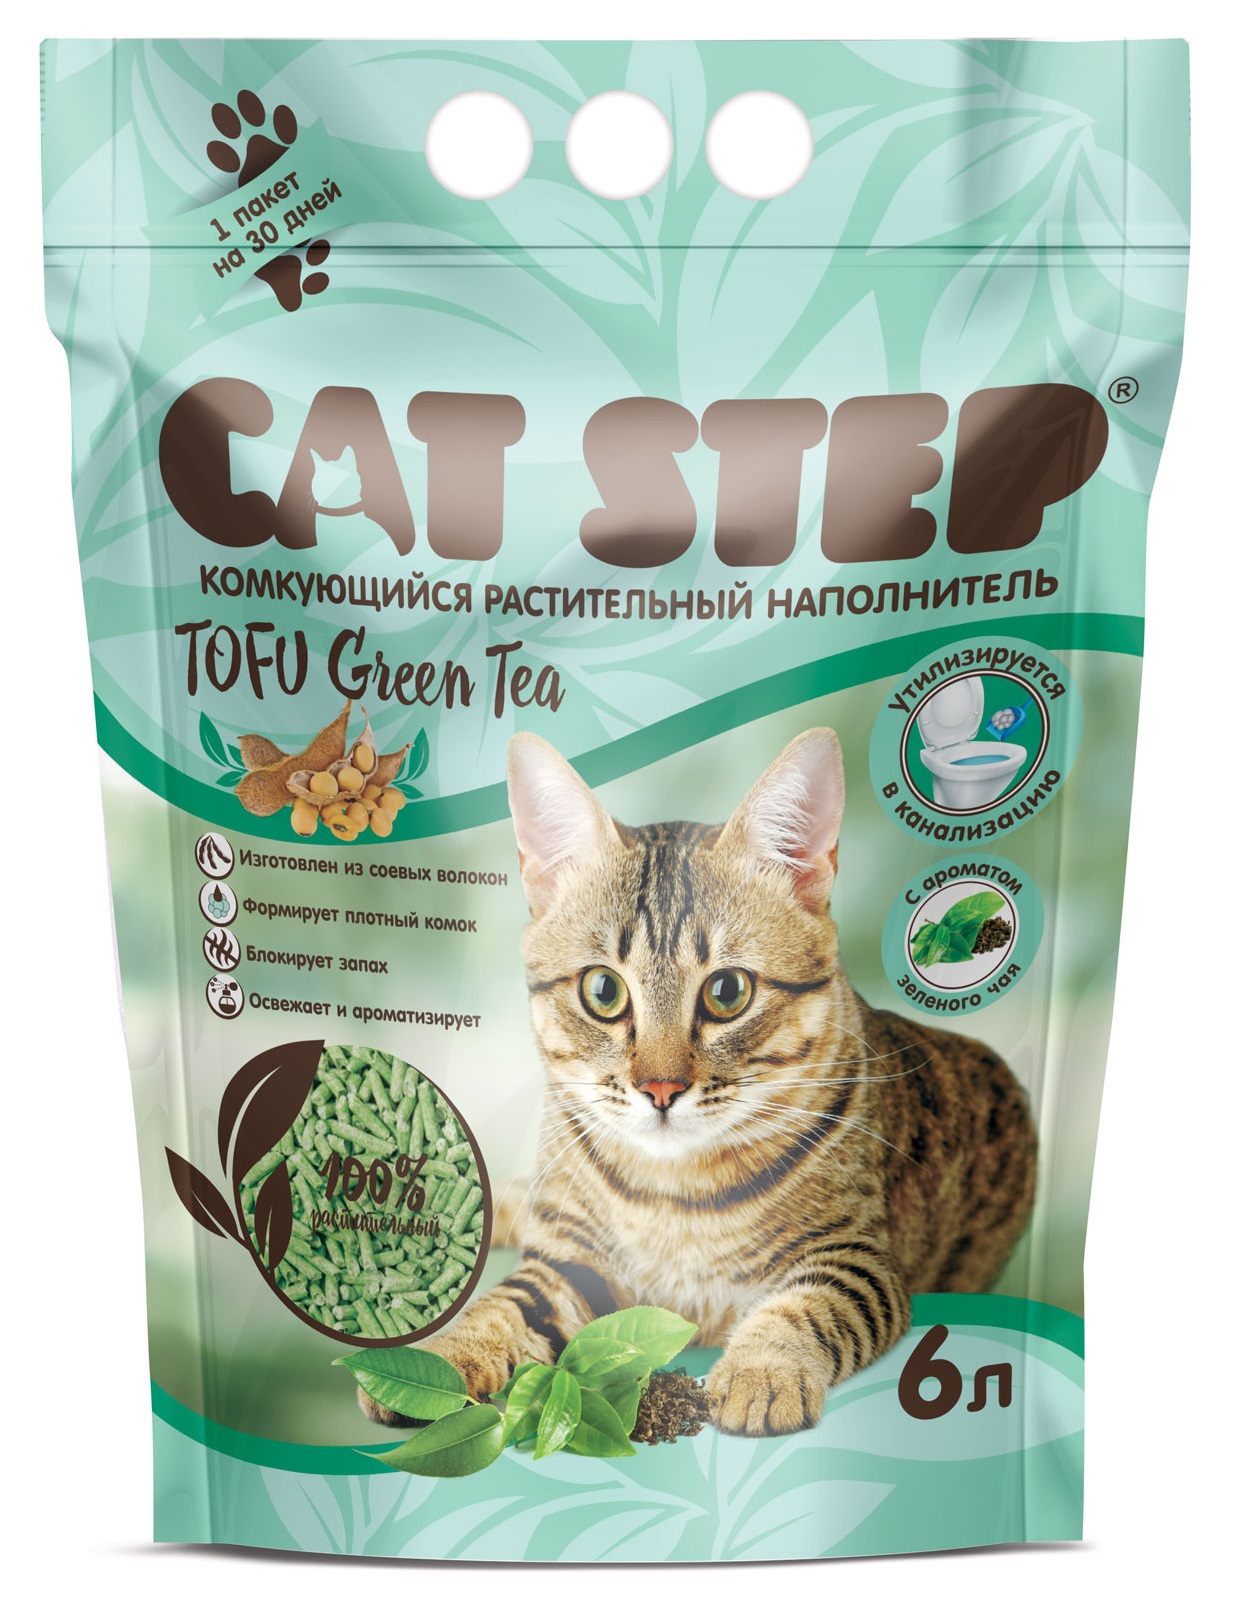 Наполнитель комкующийся растительный для кошачьего туалета Cat step tofu green tea 6 л зеленый чай